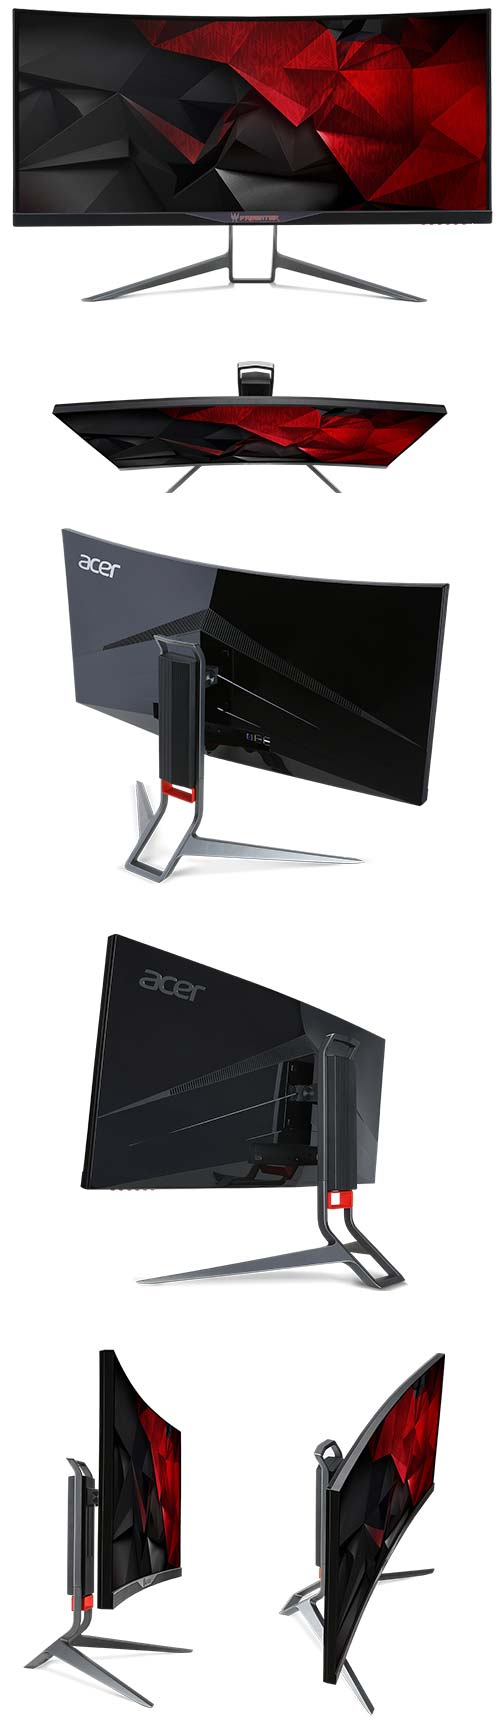 Игровой монитор Acer Predator X34 (X34bmiphz)